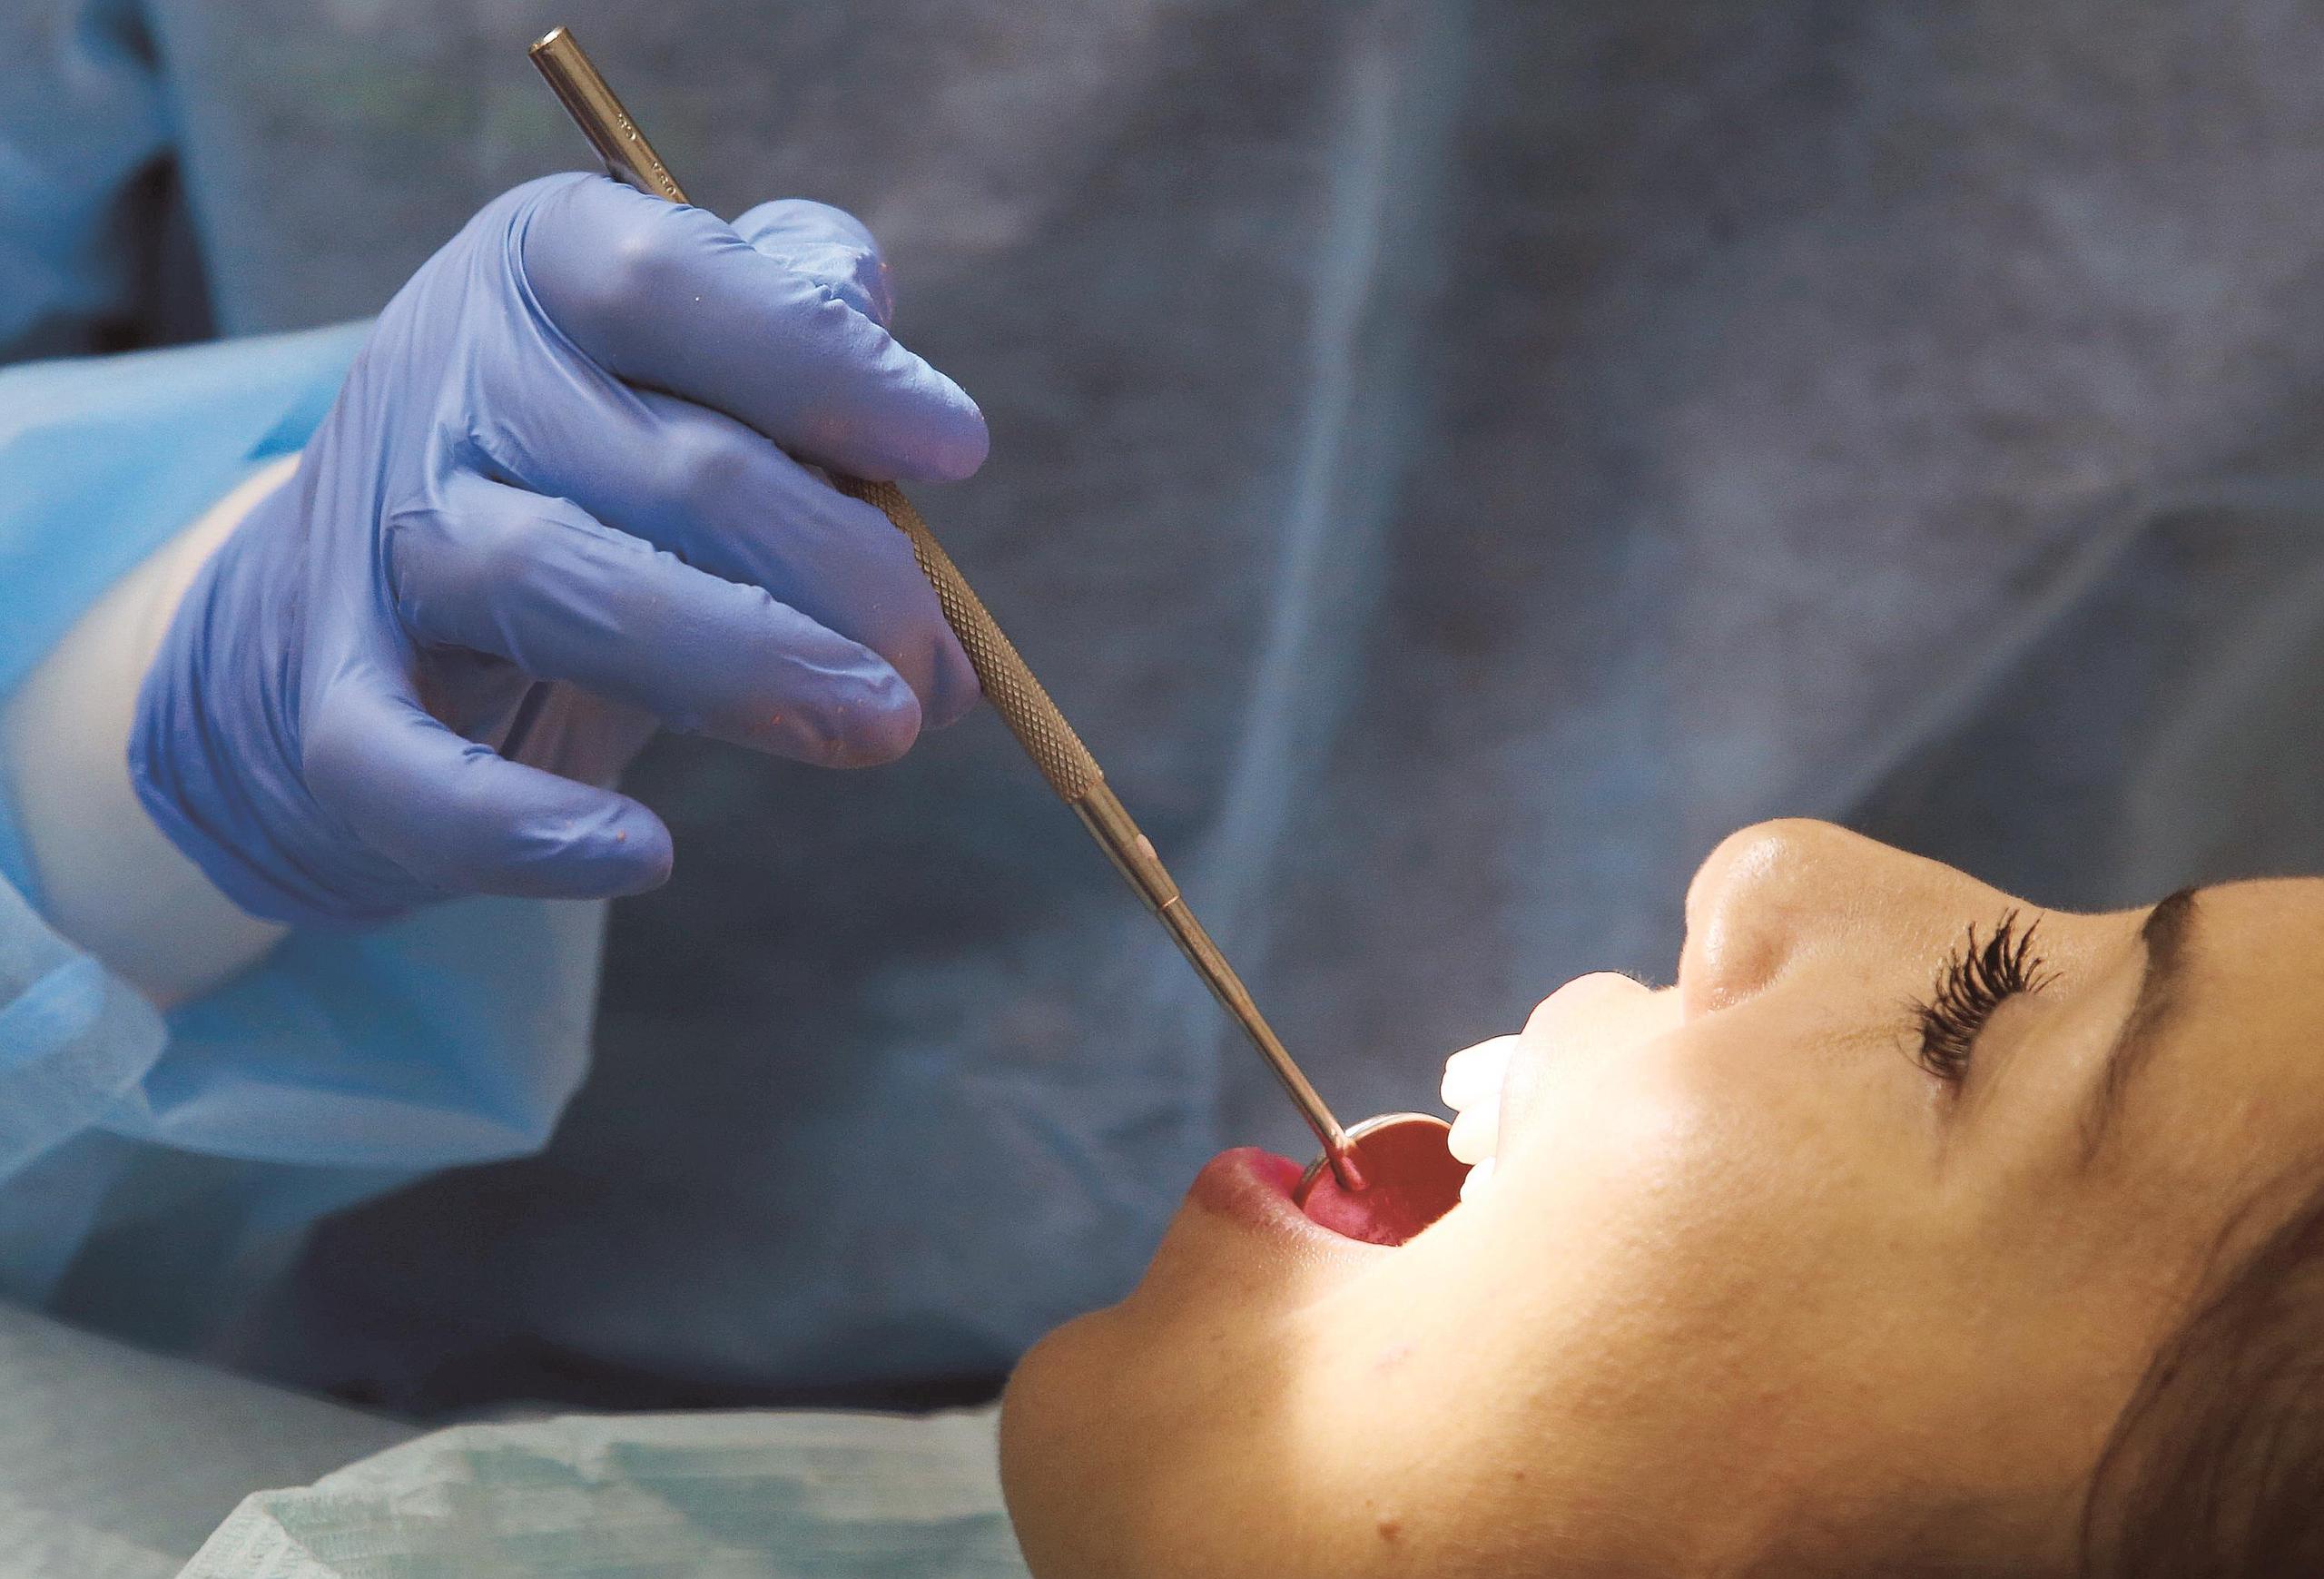 La detección temprana de cáncer de cabeza y cuello depende de que el paciente visite al dentista regularmente. (Archivo / GFR Media)